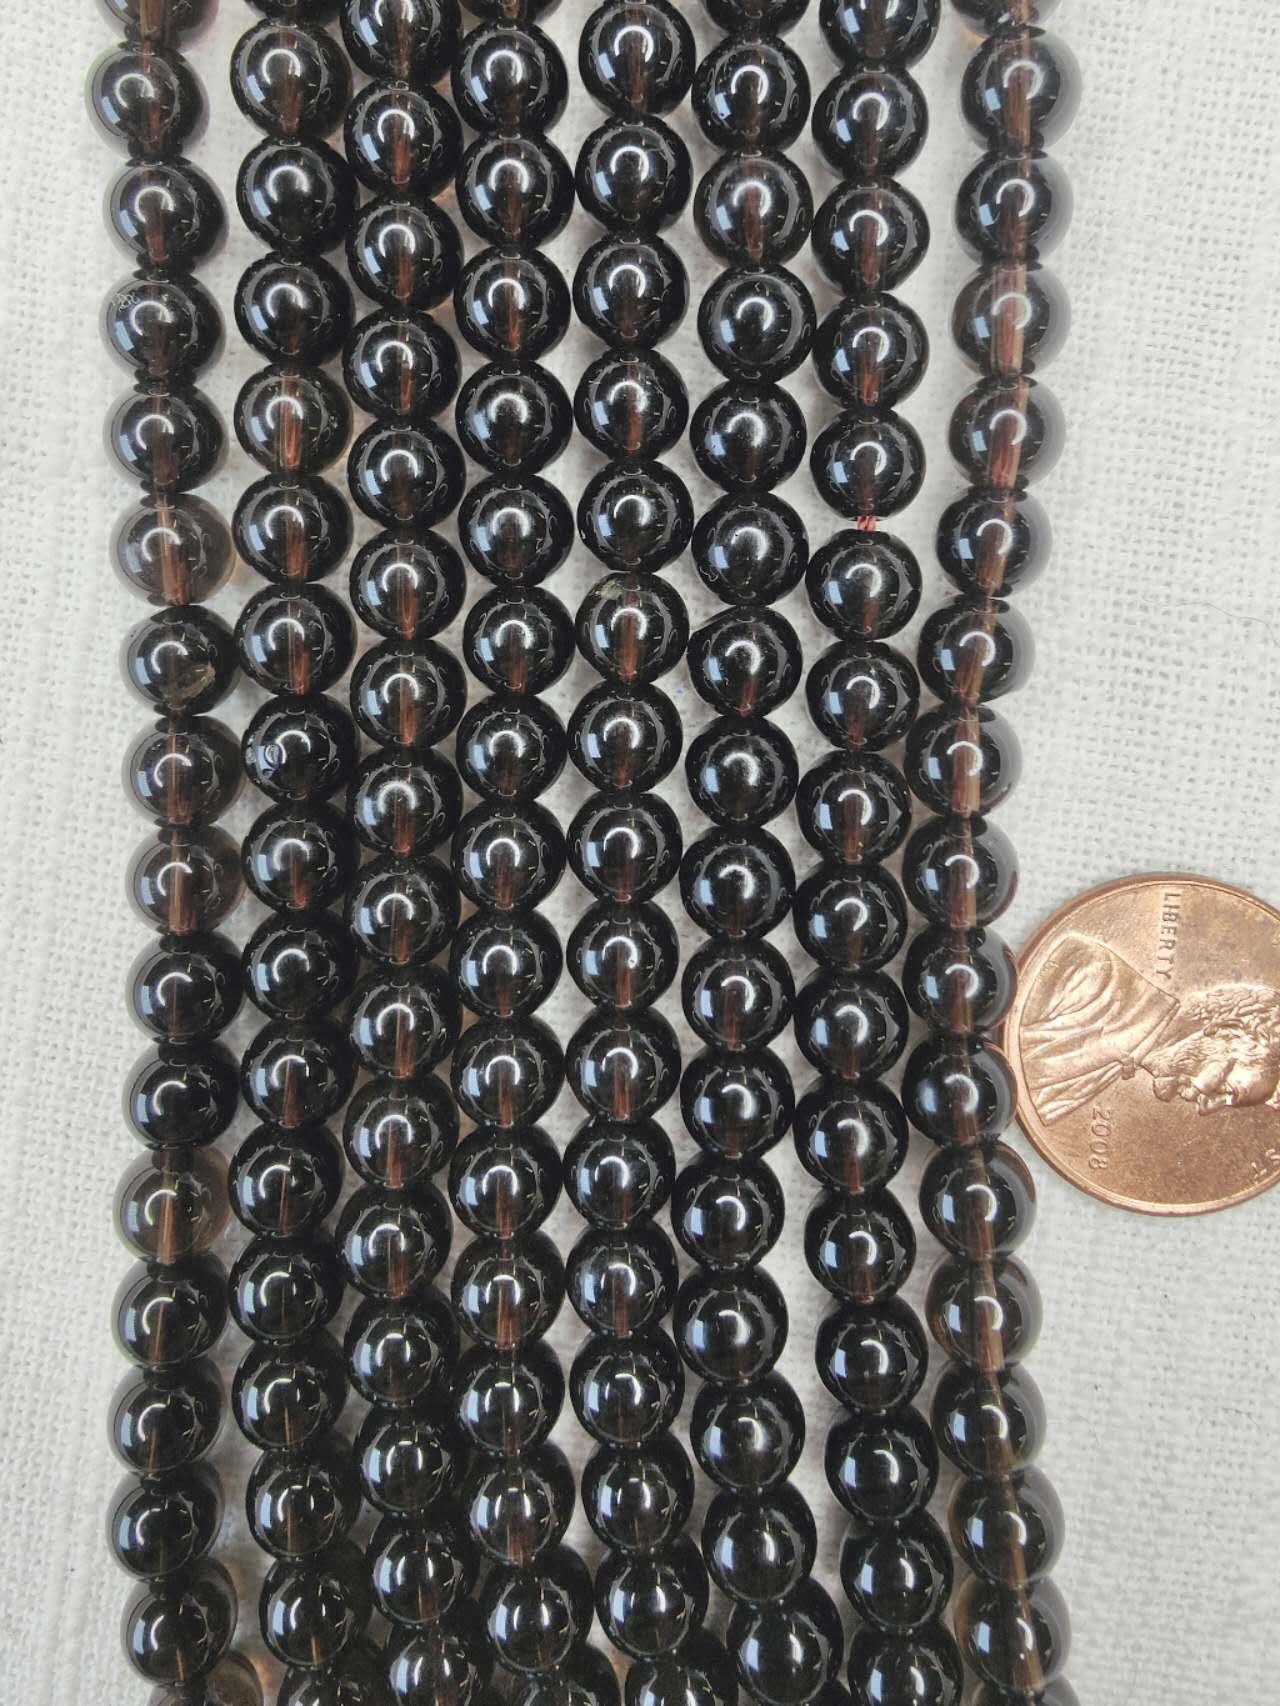 smokey quartz 6.5mm round beads AAA grade 15.5"strand